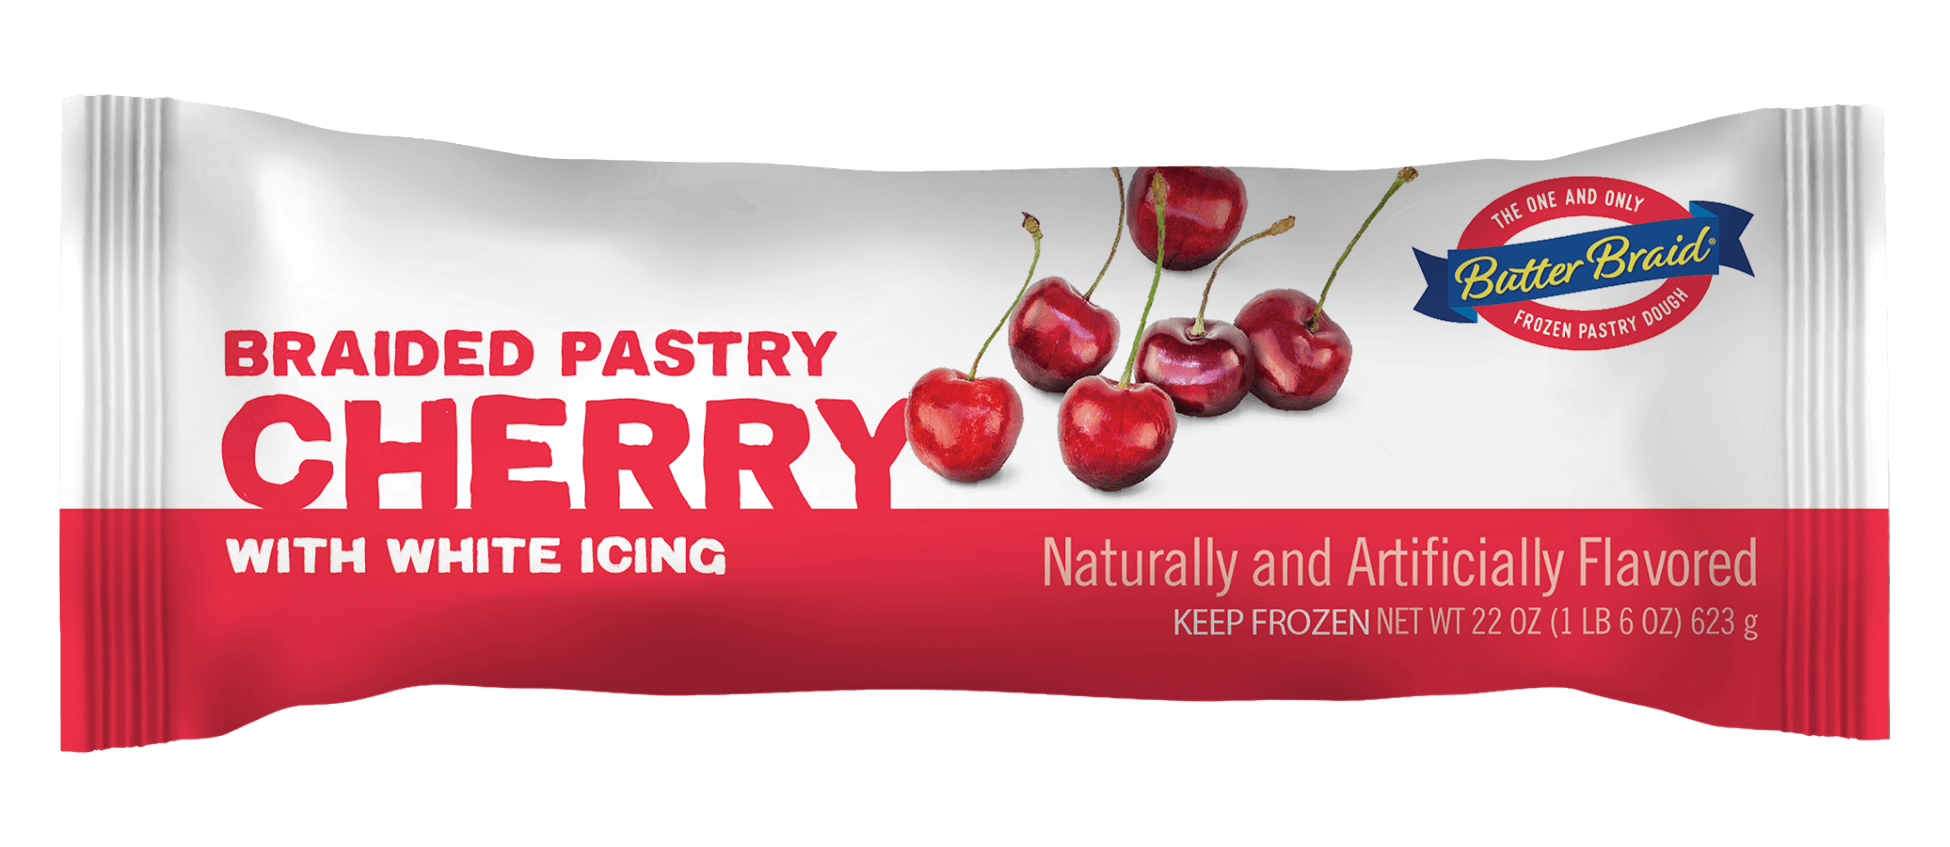 Cherry Pastry